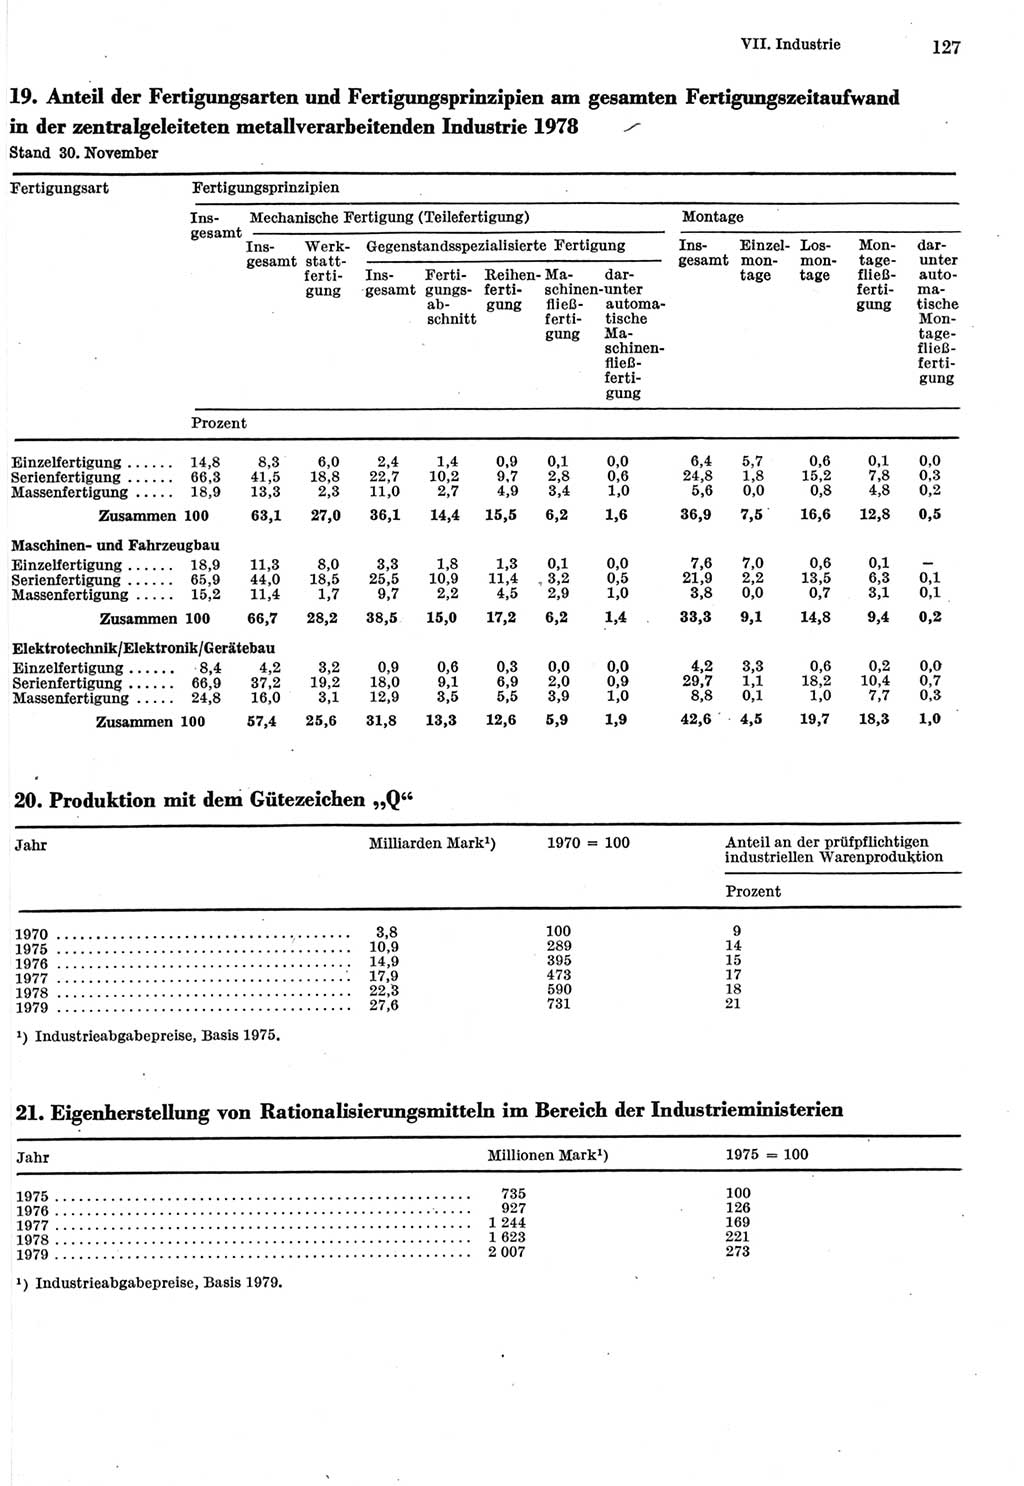 Statistisches Jahrbuch der Deutschen Demokratischen Republik (DDR) 1980, Seite 127 (Stat. Jb. DDR 1980, S. 127)